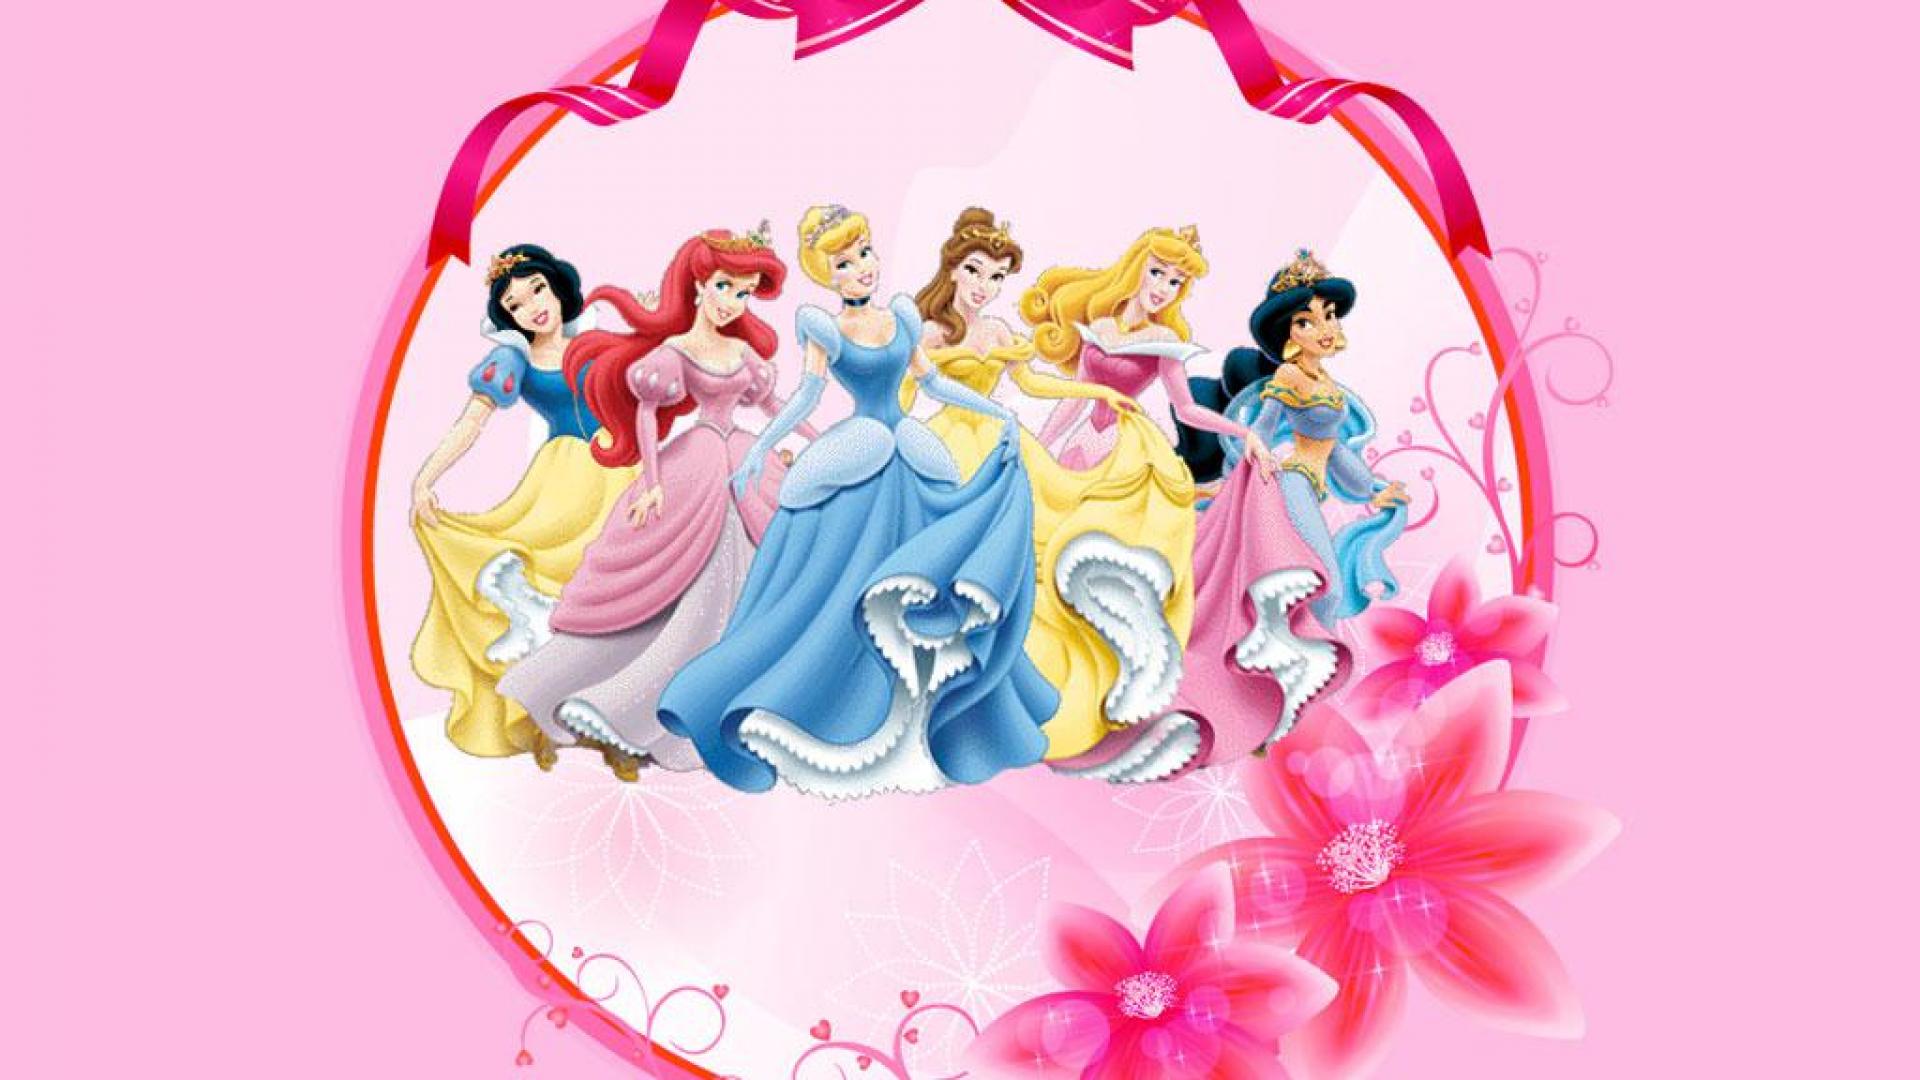 Disney princesses - (#141133) - High Quality and Resolution ...